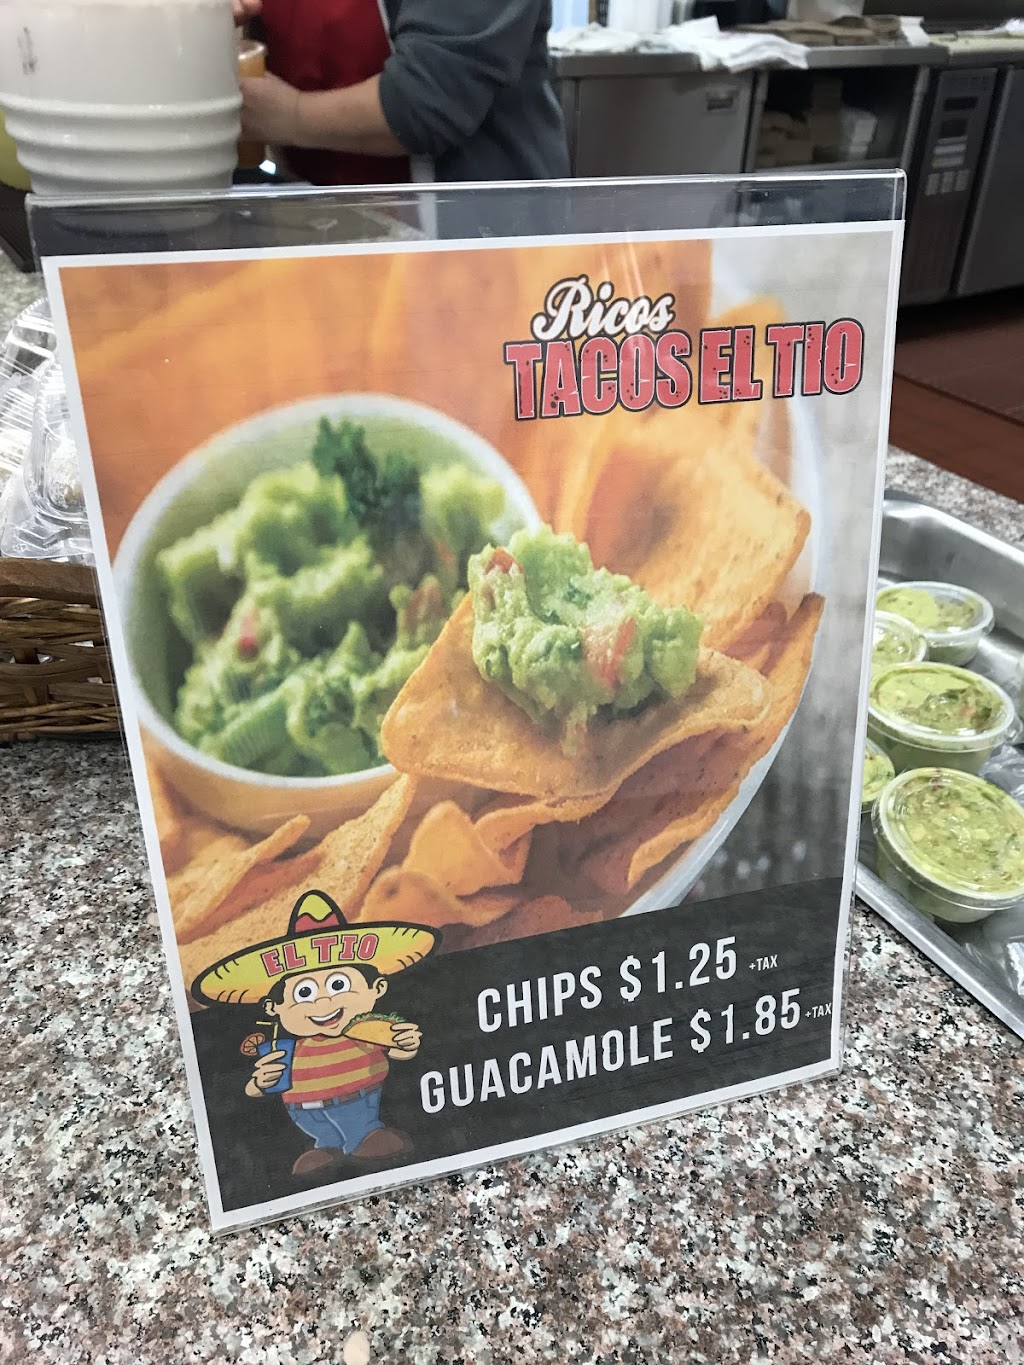 Ricos Tacos El Tio Inc | 2150 W El Segundo Blvd, Gardena, CA 90249 | Phone: (310) 329-9667